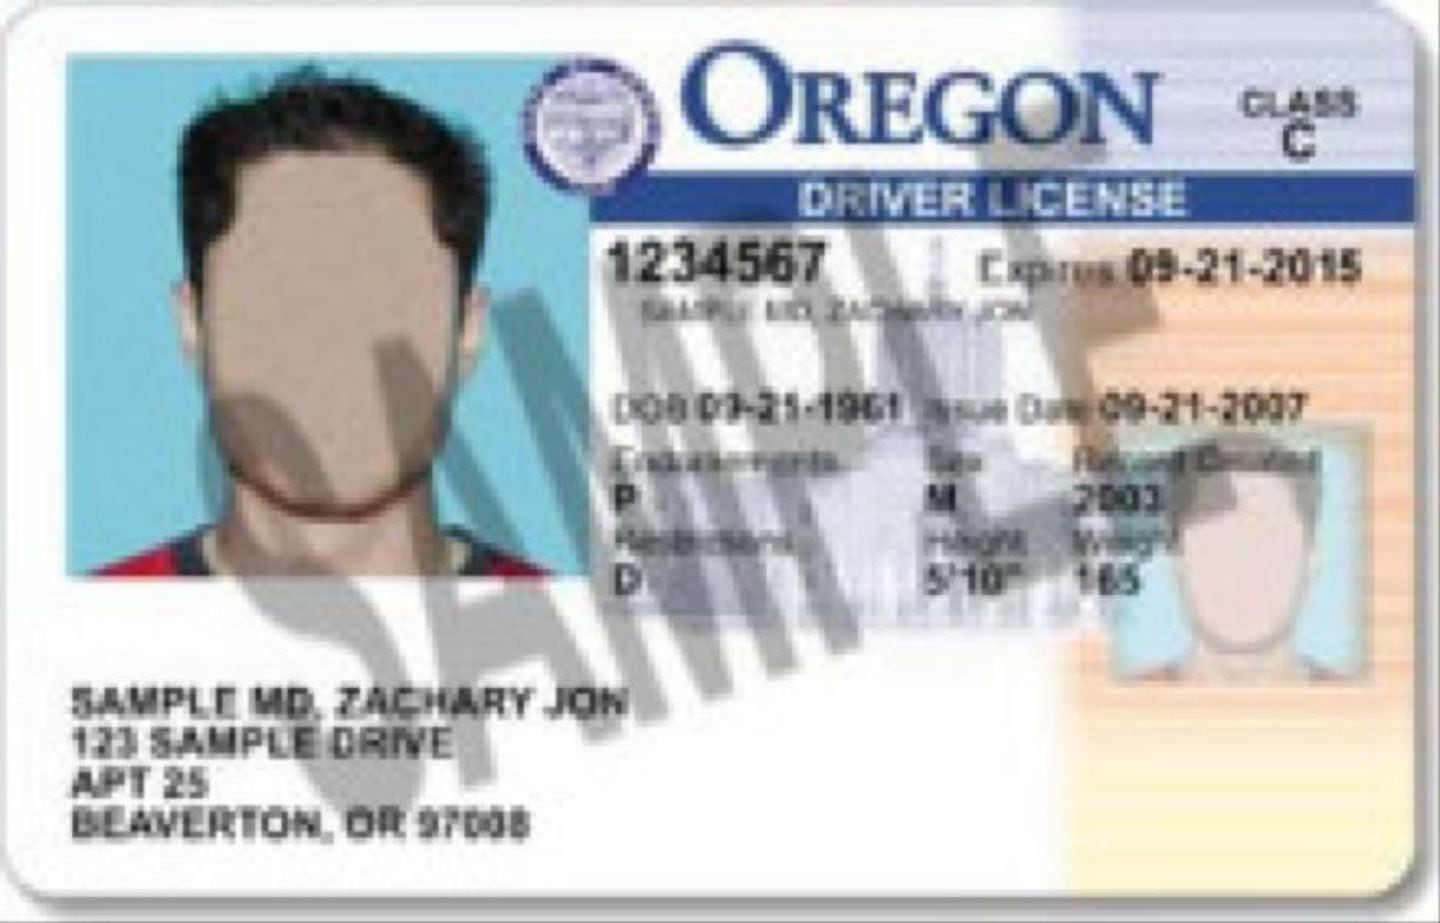 Renew My Driver's License COVID 19